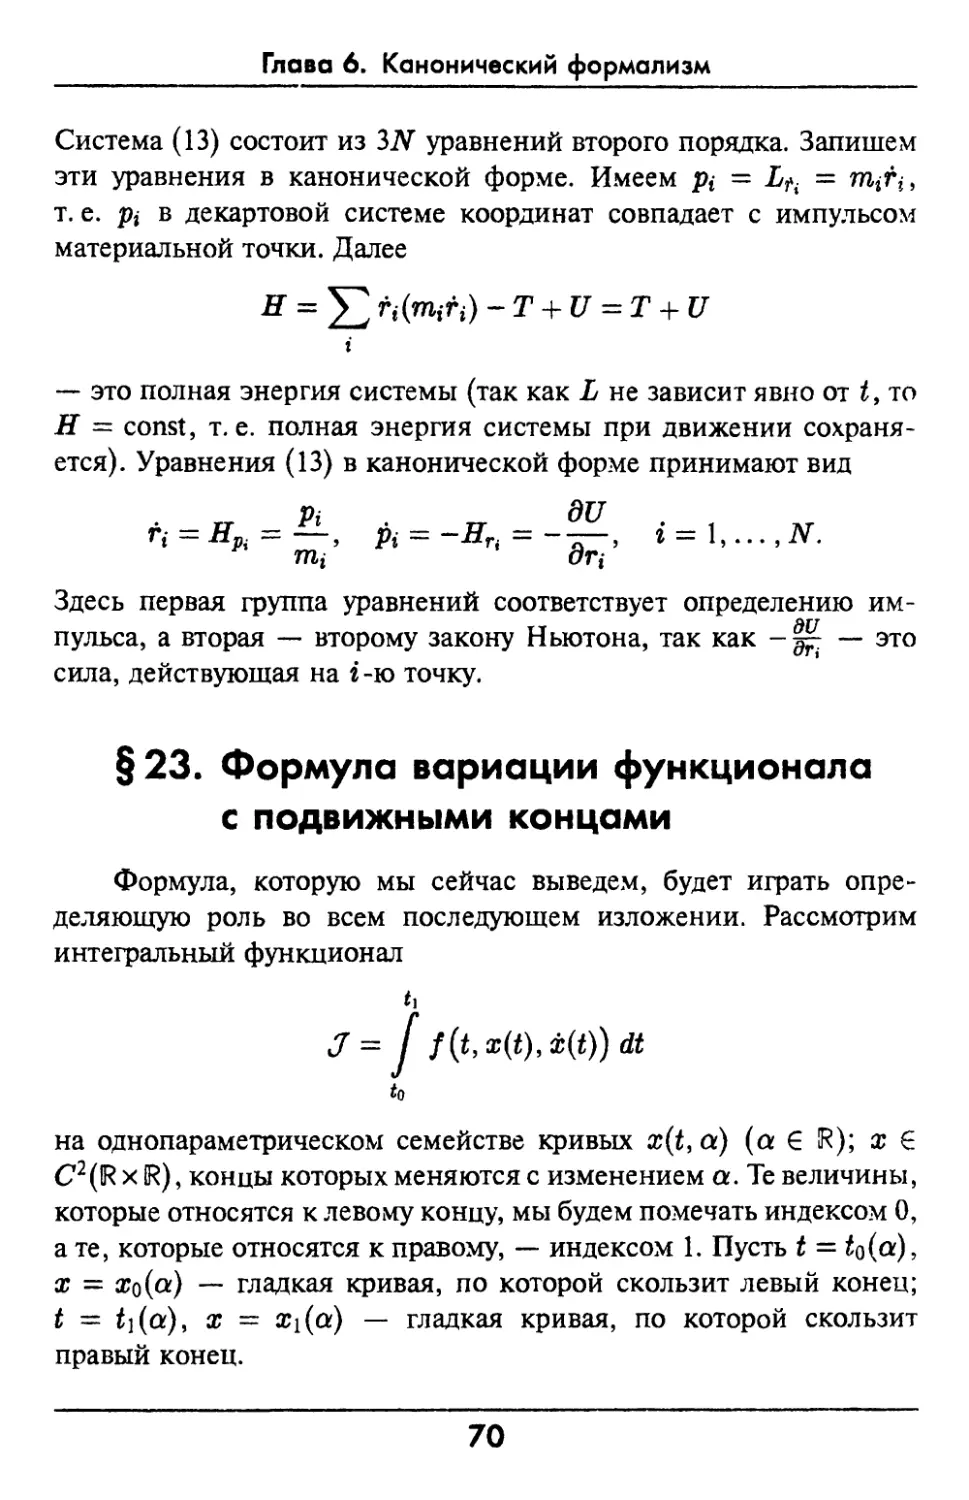 §23. Формула вариации функционала с подвижными концами